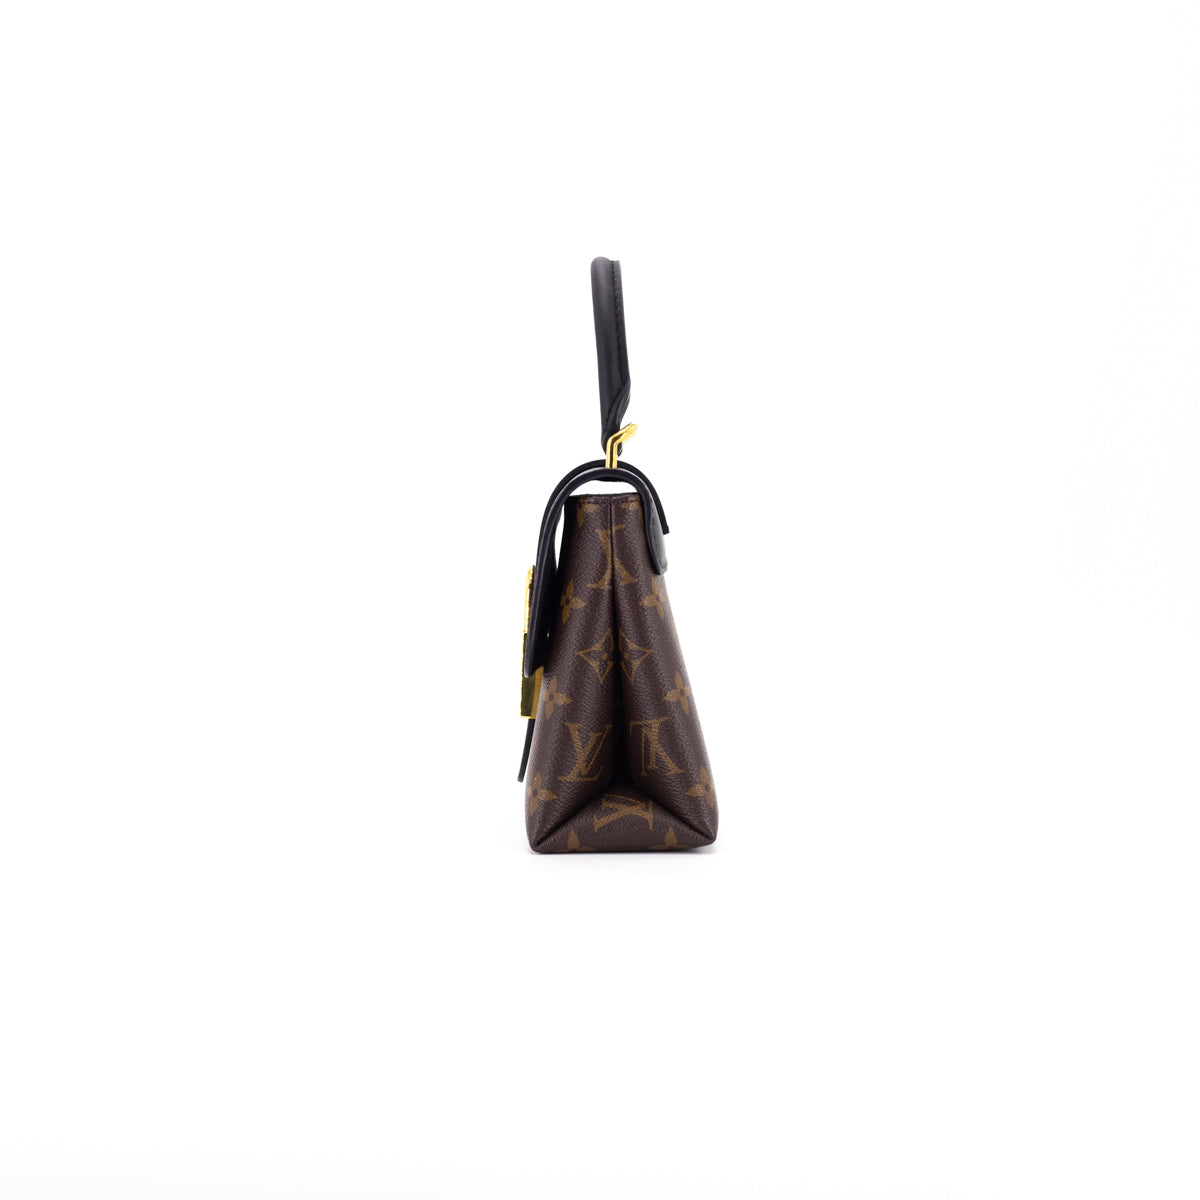 Louis Vuitton Locky BB Noir/Monogram - THE PURSE AFFAIR